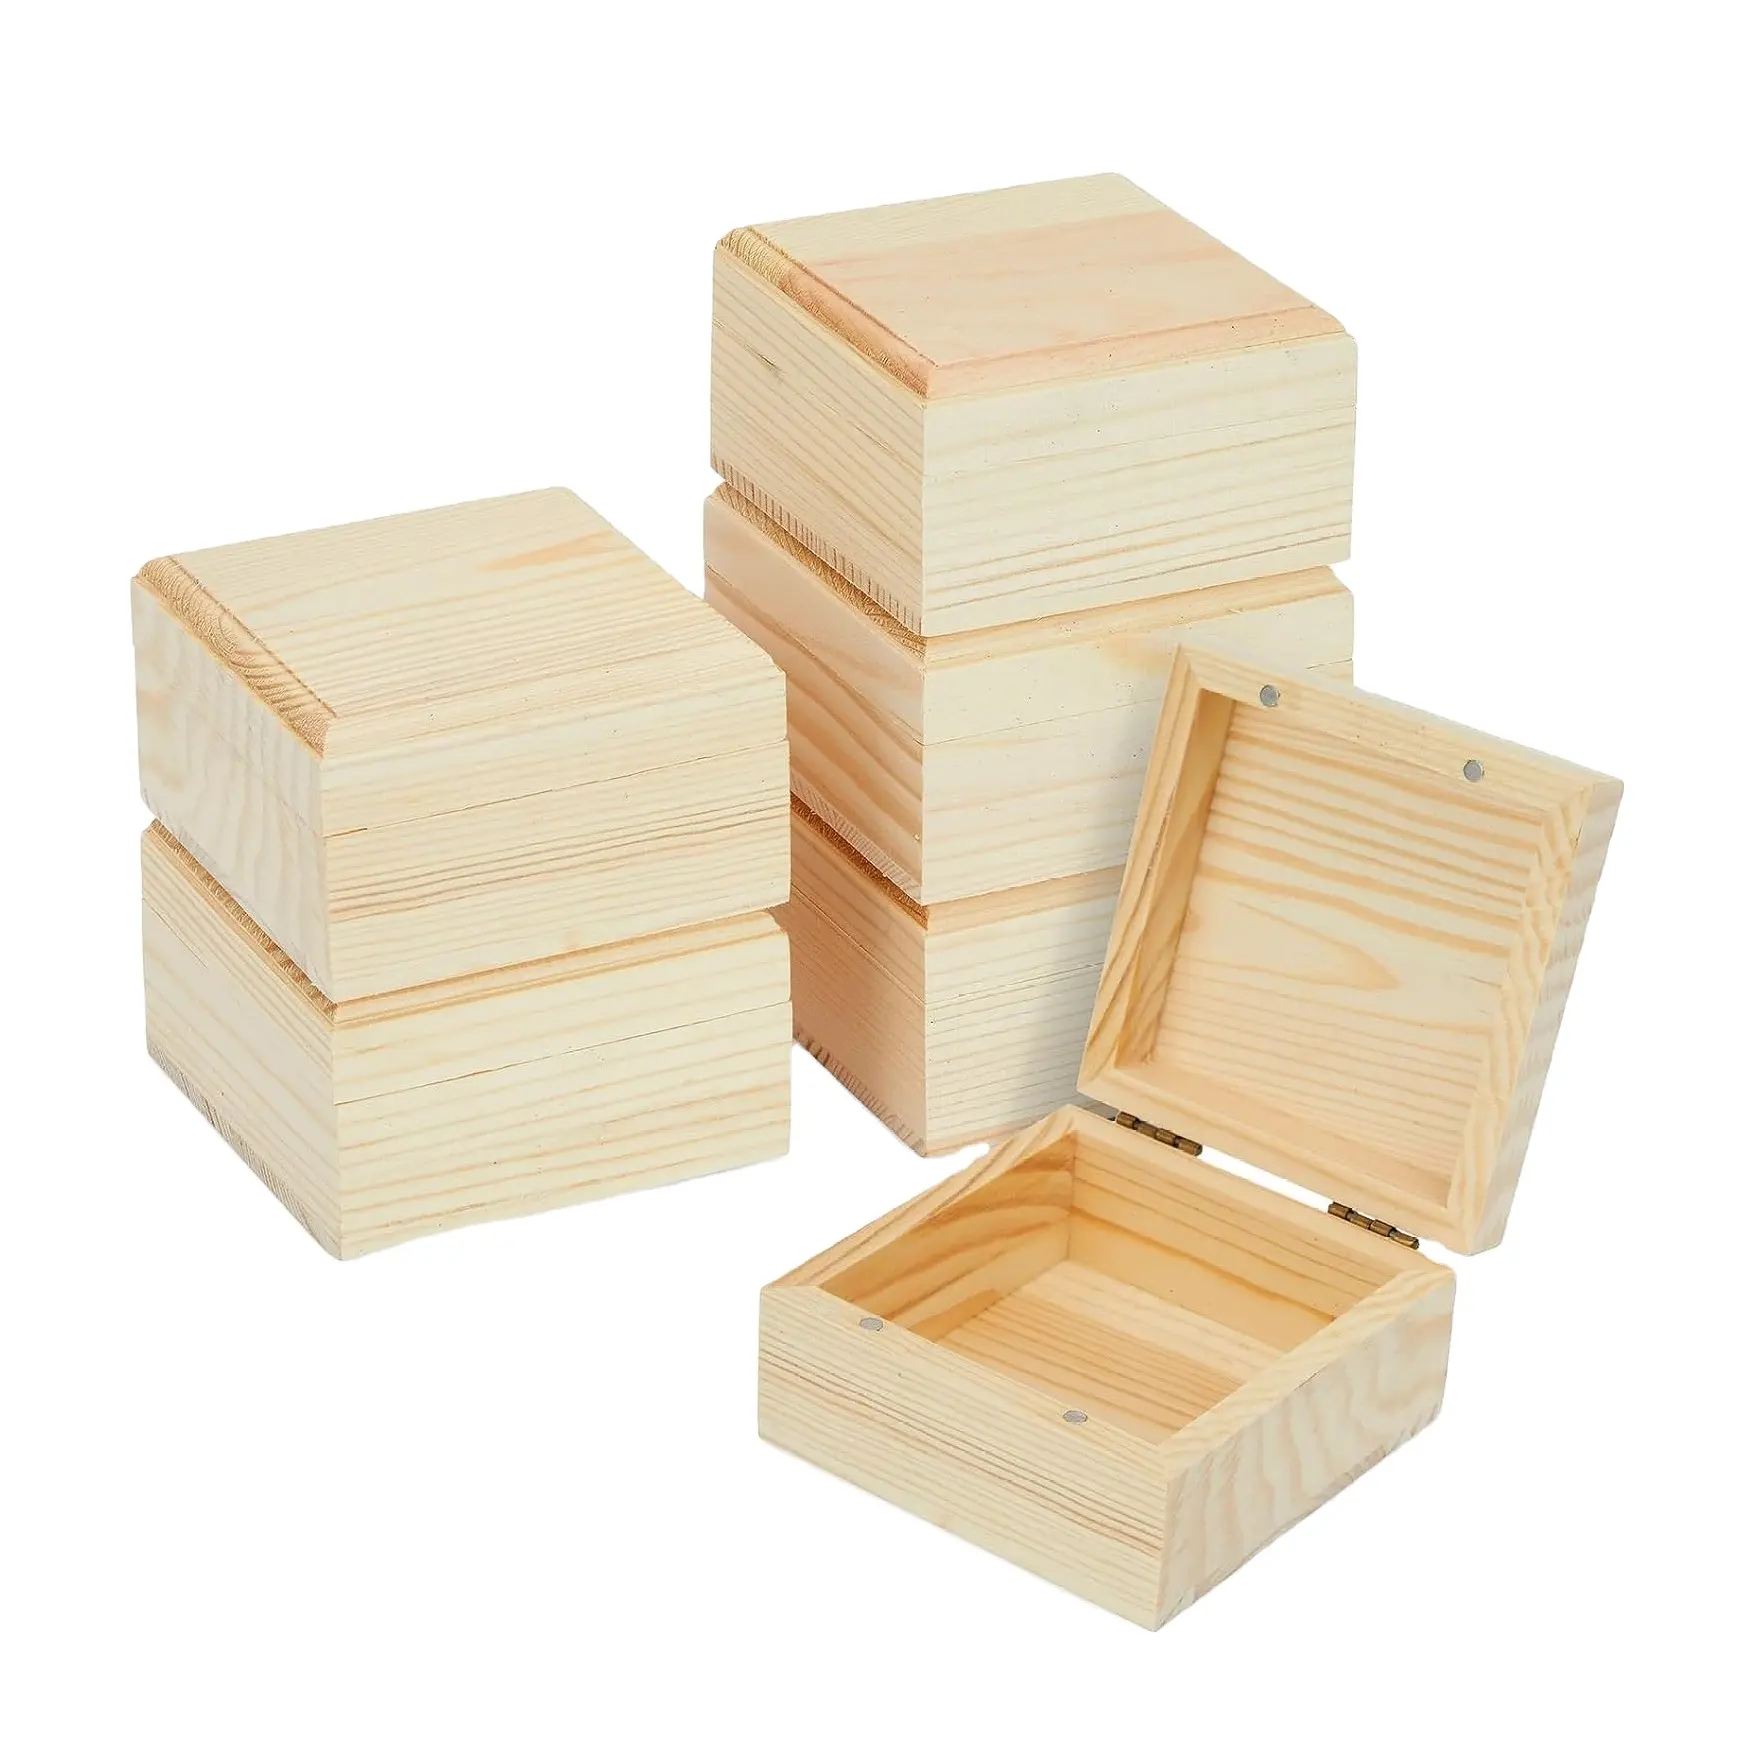 Caixa de madeira para guardar lembrancinhas, presentes de aniversário, noivado, caixas decorativas de bambu com tampa articulada e trava